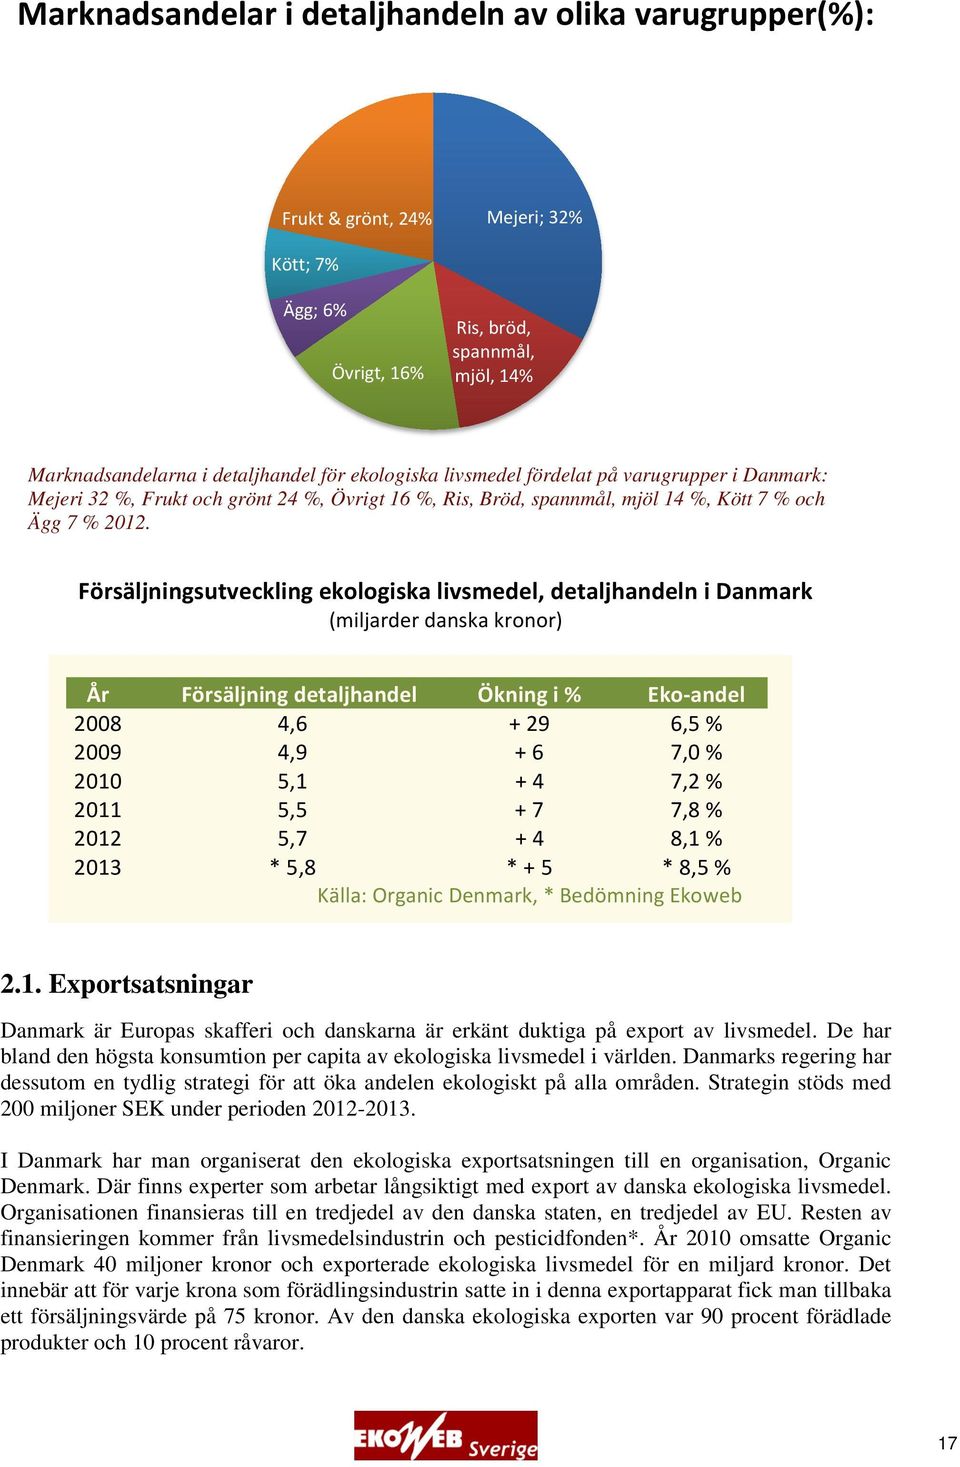 Försäljningsutveckling ekologiska livsmedel, detaljhandeln i Danmark (miljarder danska kronor) År Försäljning detaljhandel Ökning i % Eko-andel 2008 4,6 + 29 6,5 % 2009 4,9 + 6 7,0 % 2010 5,1 + 4 7,2